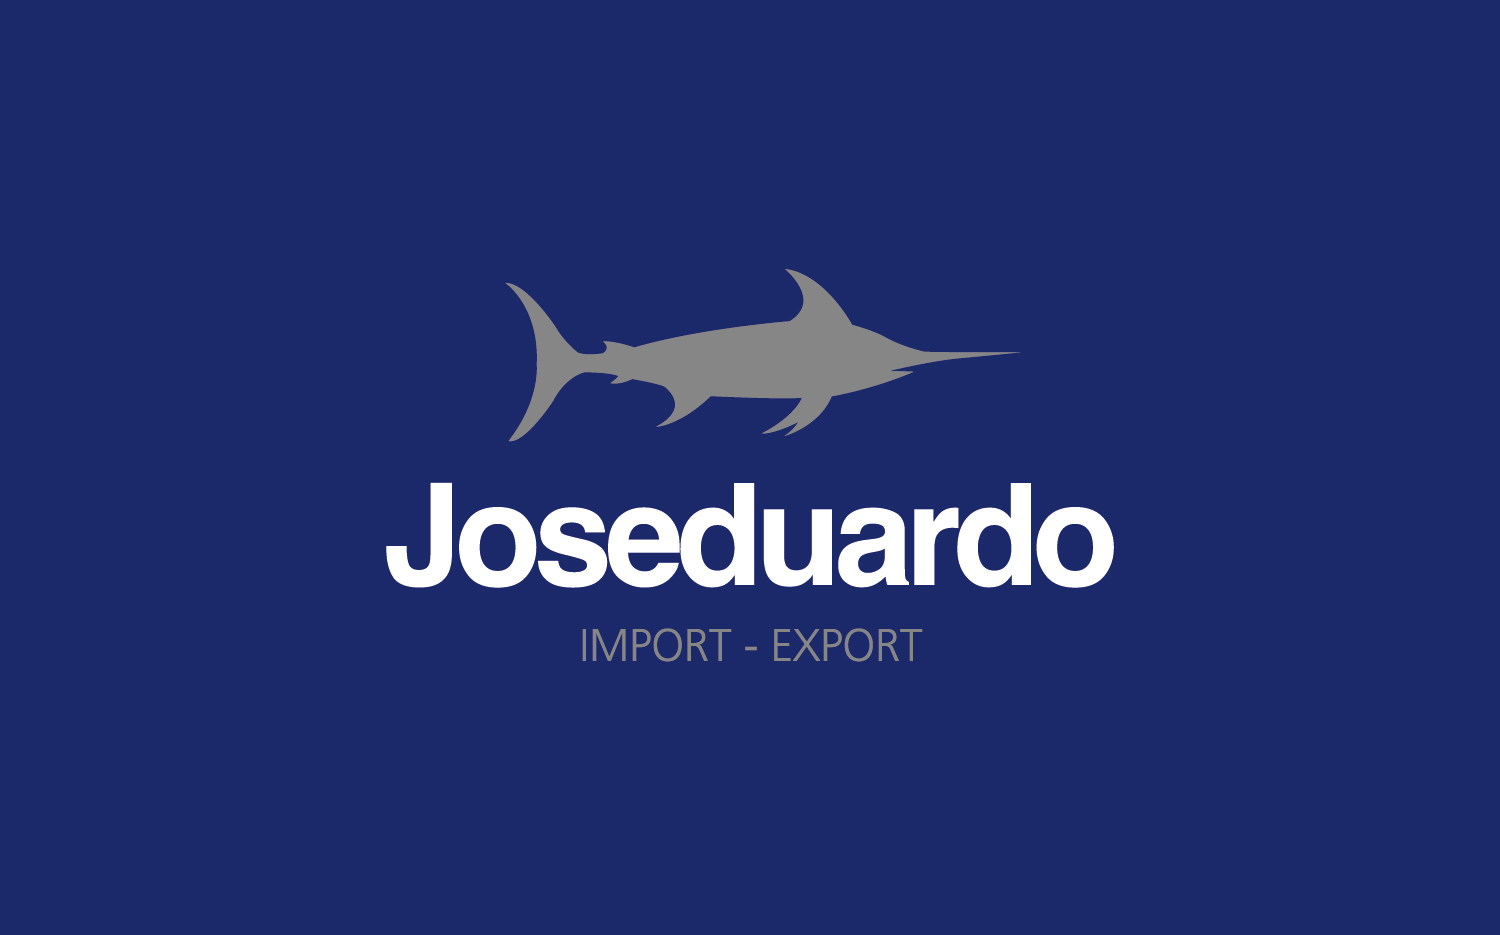 Diseño de la identidad y naming de Joseduardo